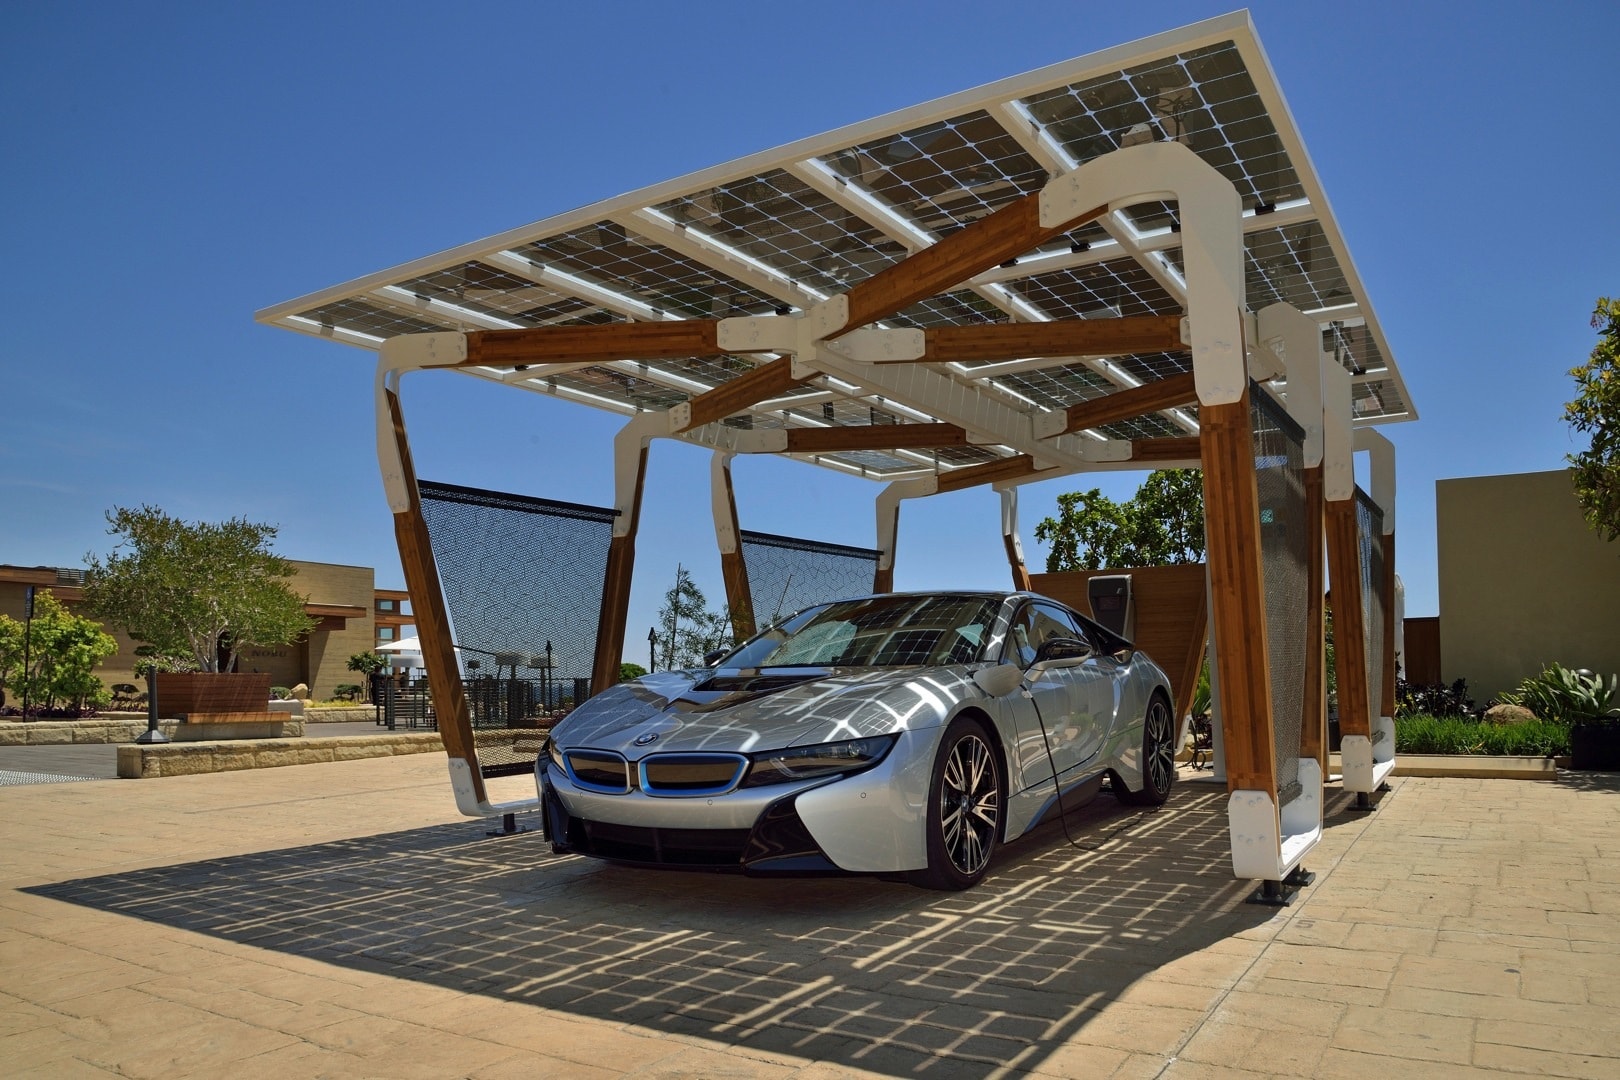 BMW Presents Solar Carport Concept for i Cars - Bmw Presents Solar Carport Concept For I Cars 80996 1